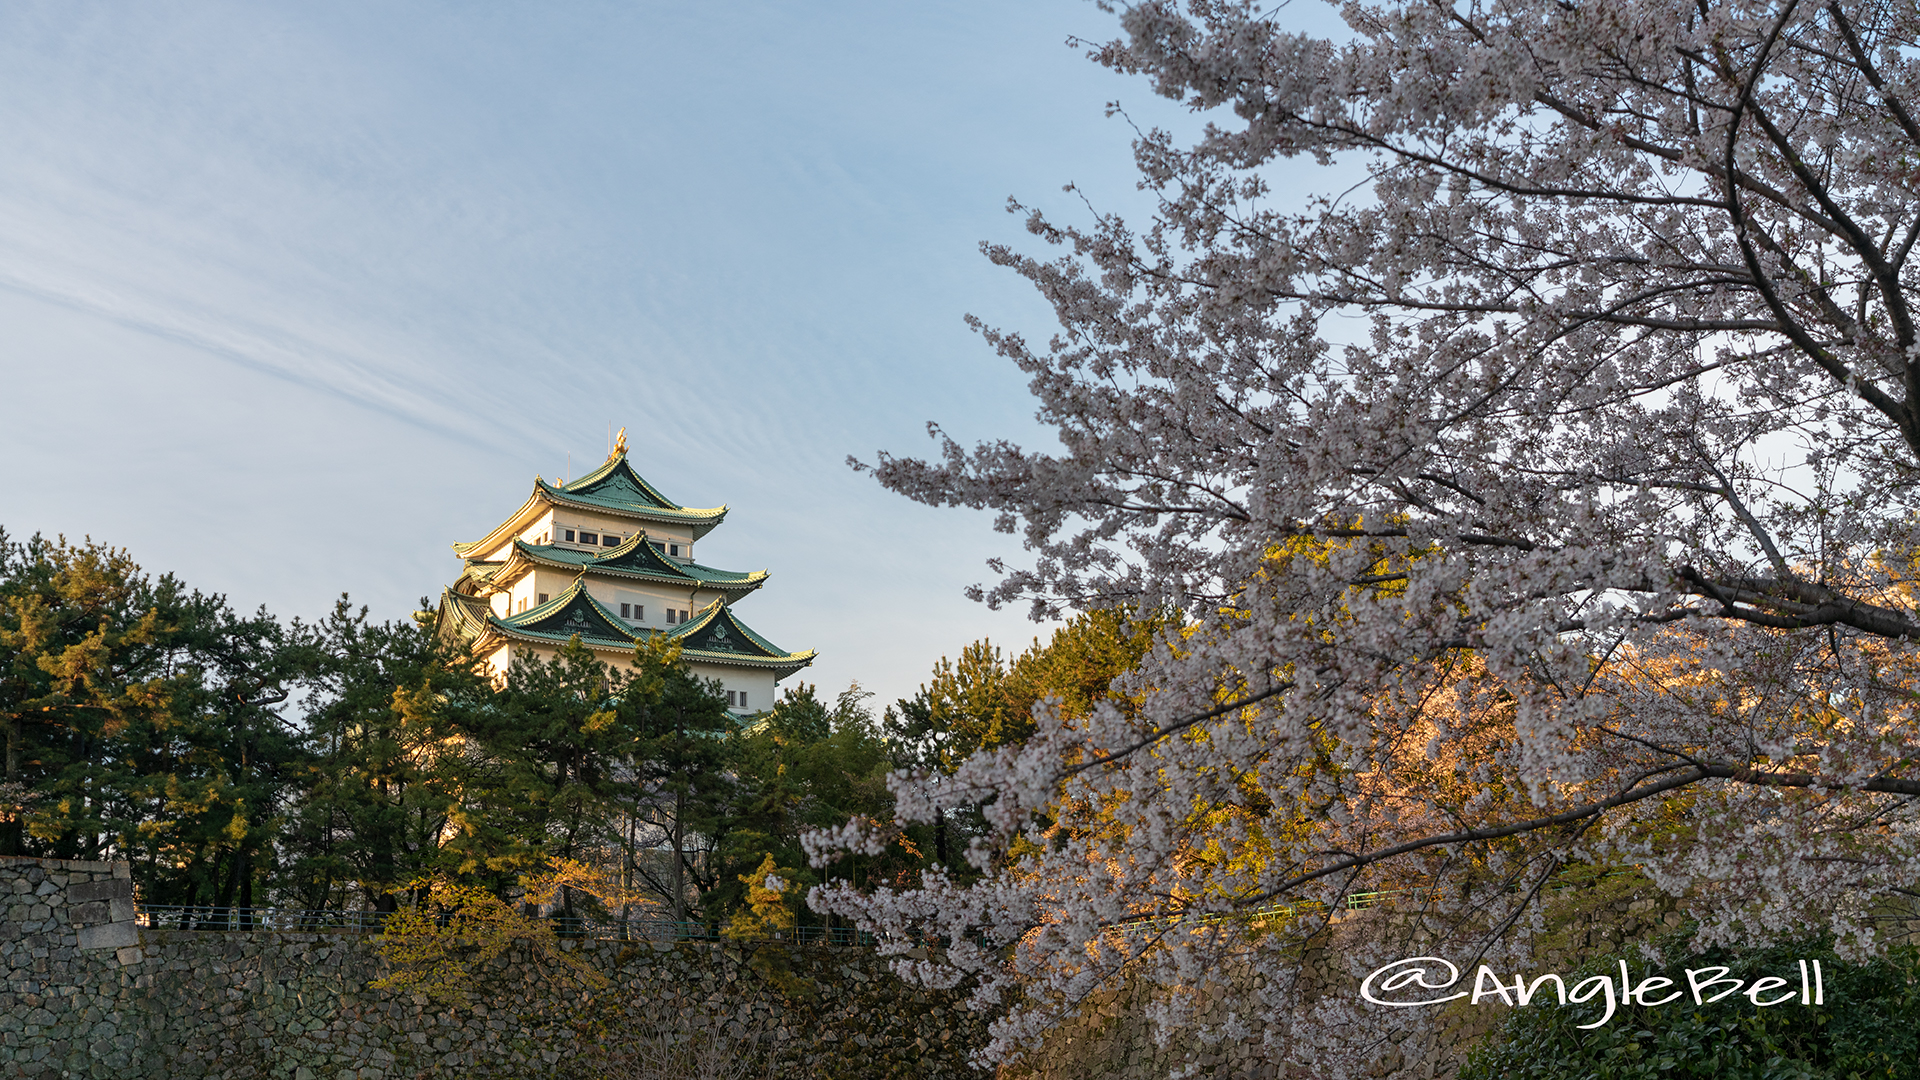 名城公園 外堀から見る名古屋城とサクラ 2019